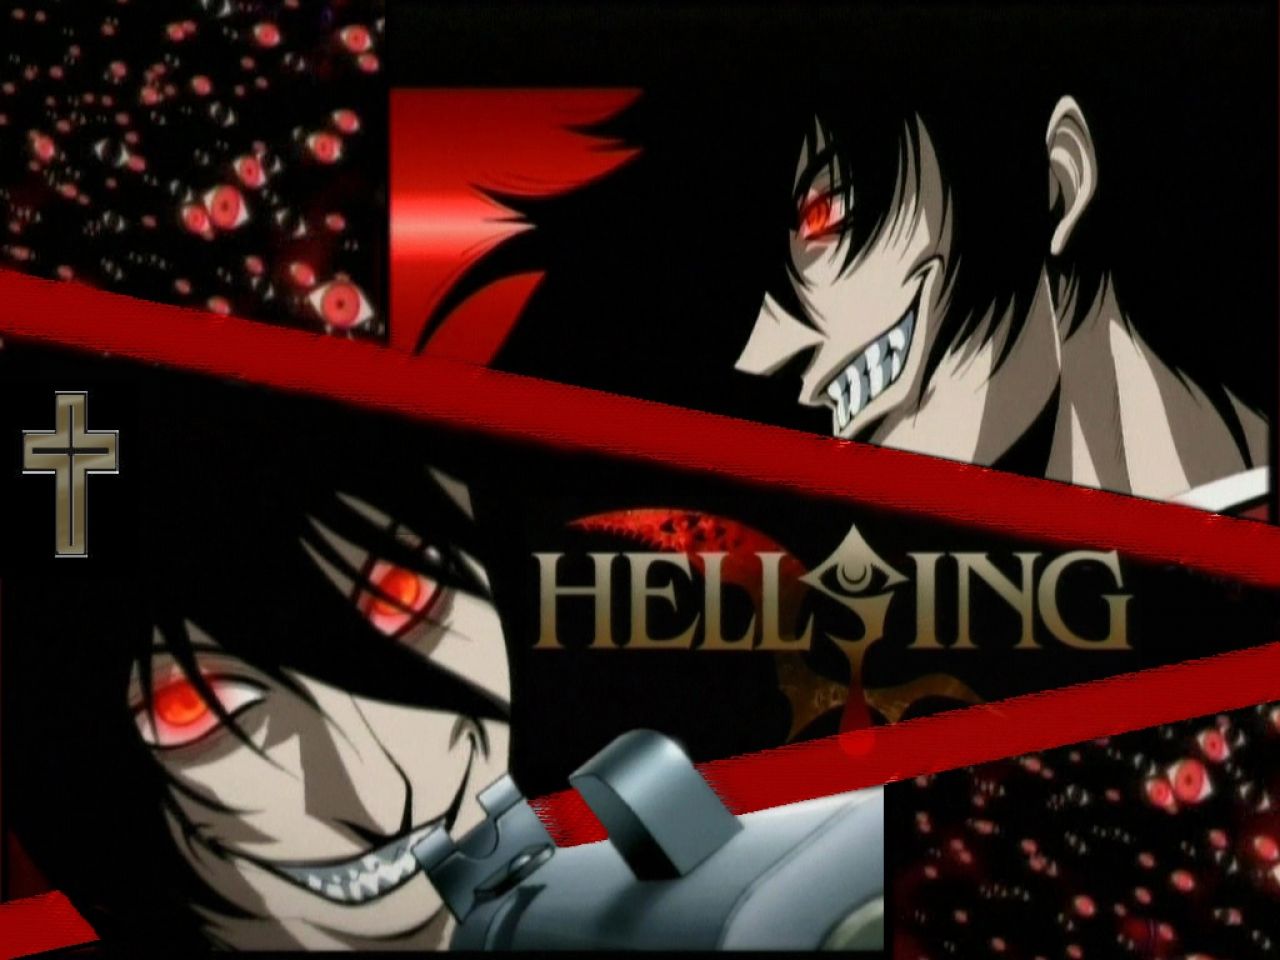 Papeis de parede Hellsing Anime baixar imagens